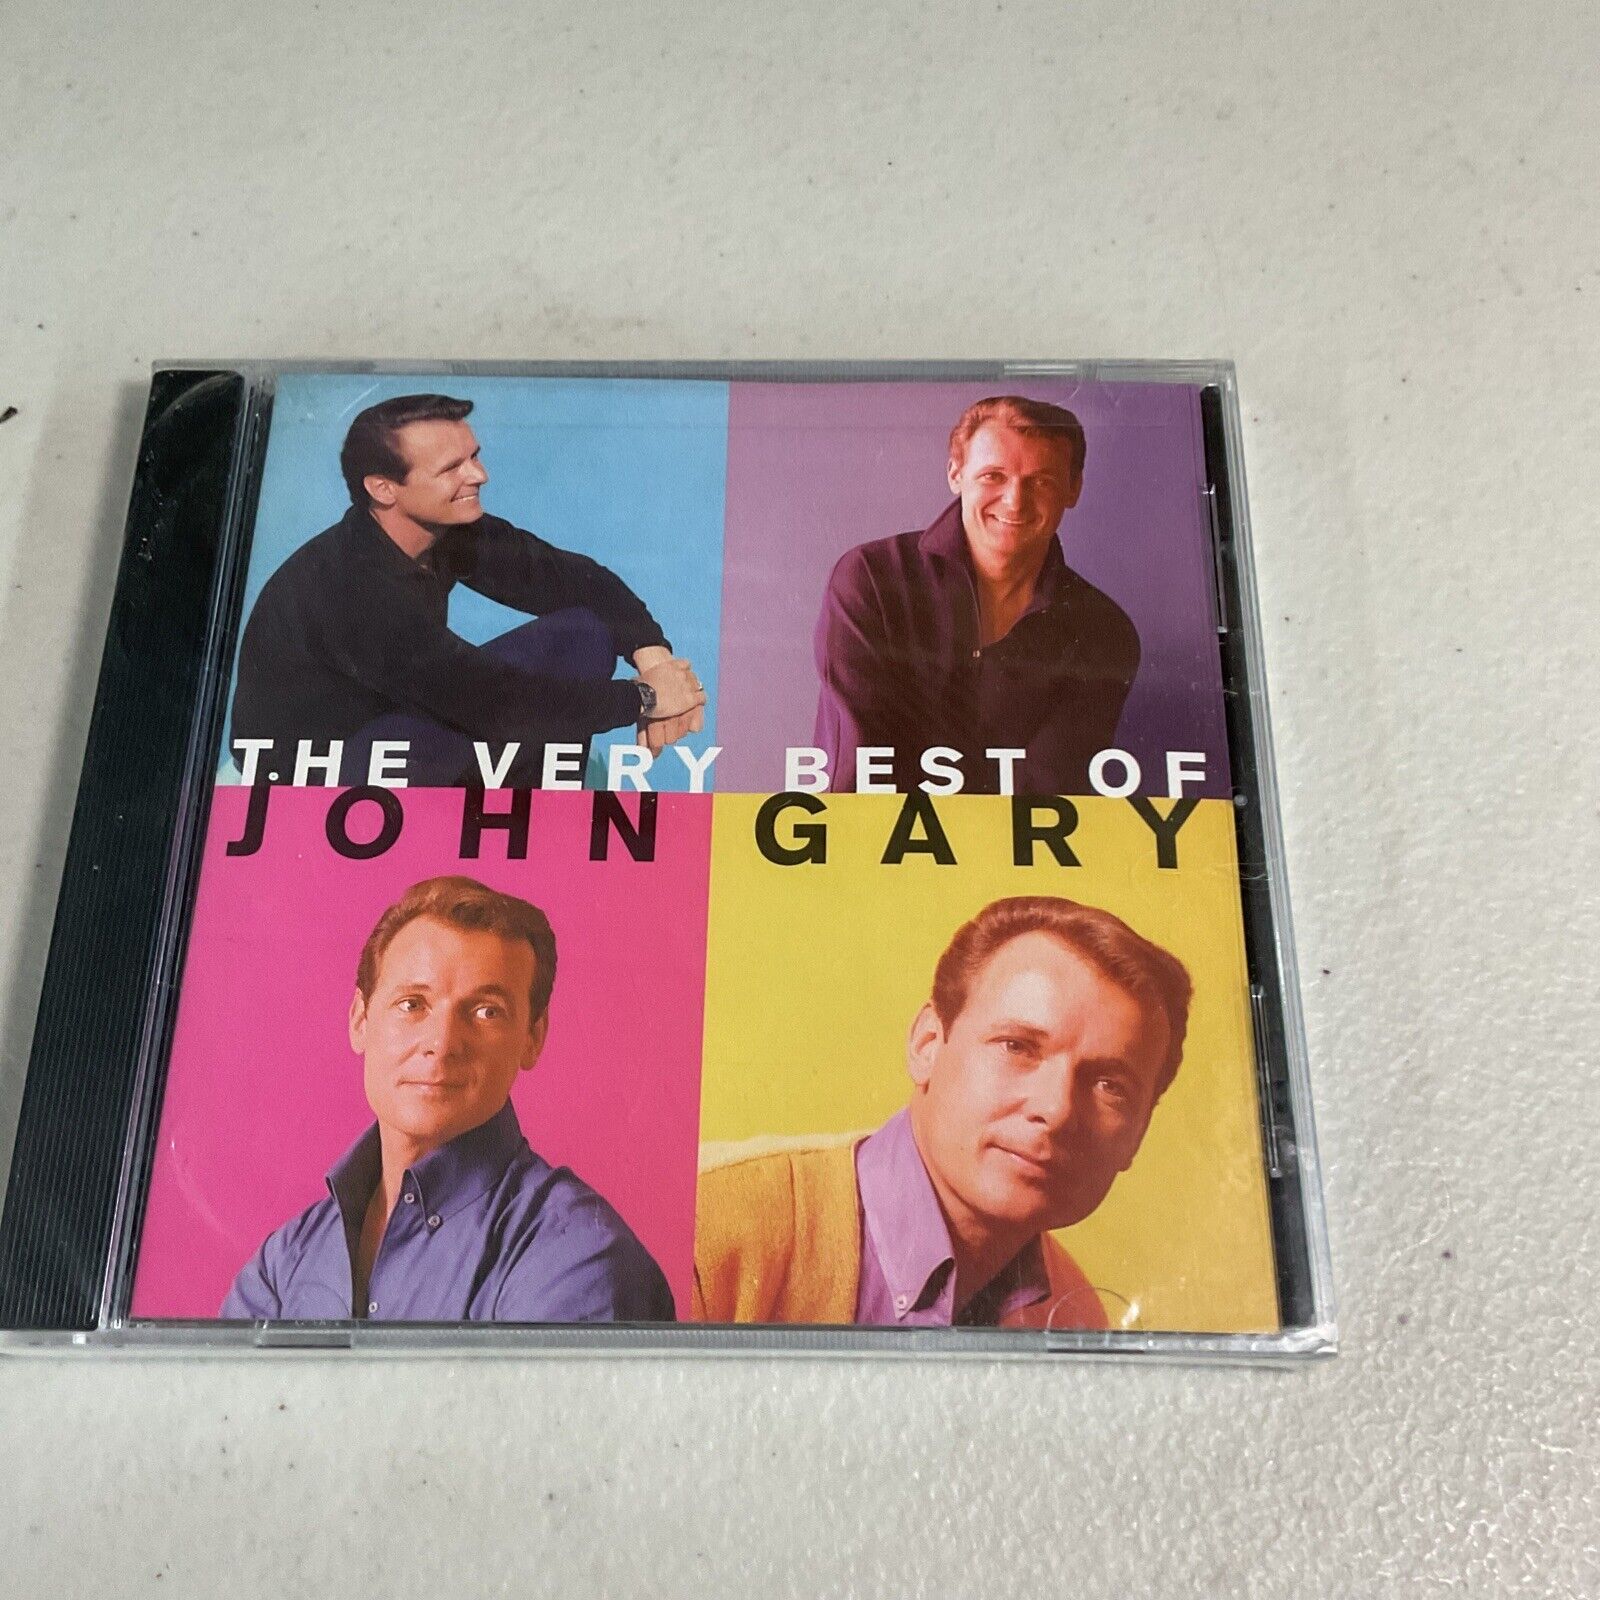 The Best of John Gary [RCA Victor] by John Gary (CD, Feb-1997, RCA) BX8